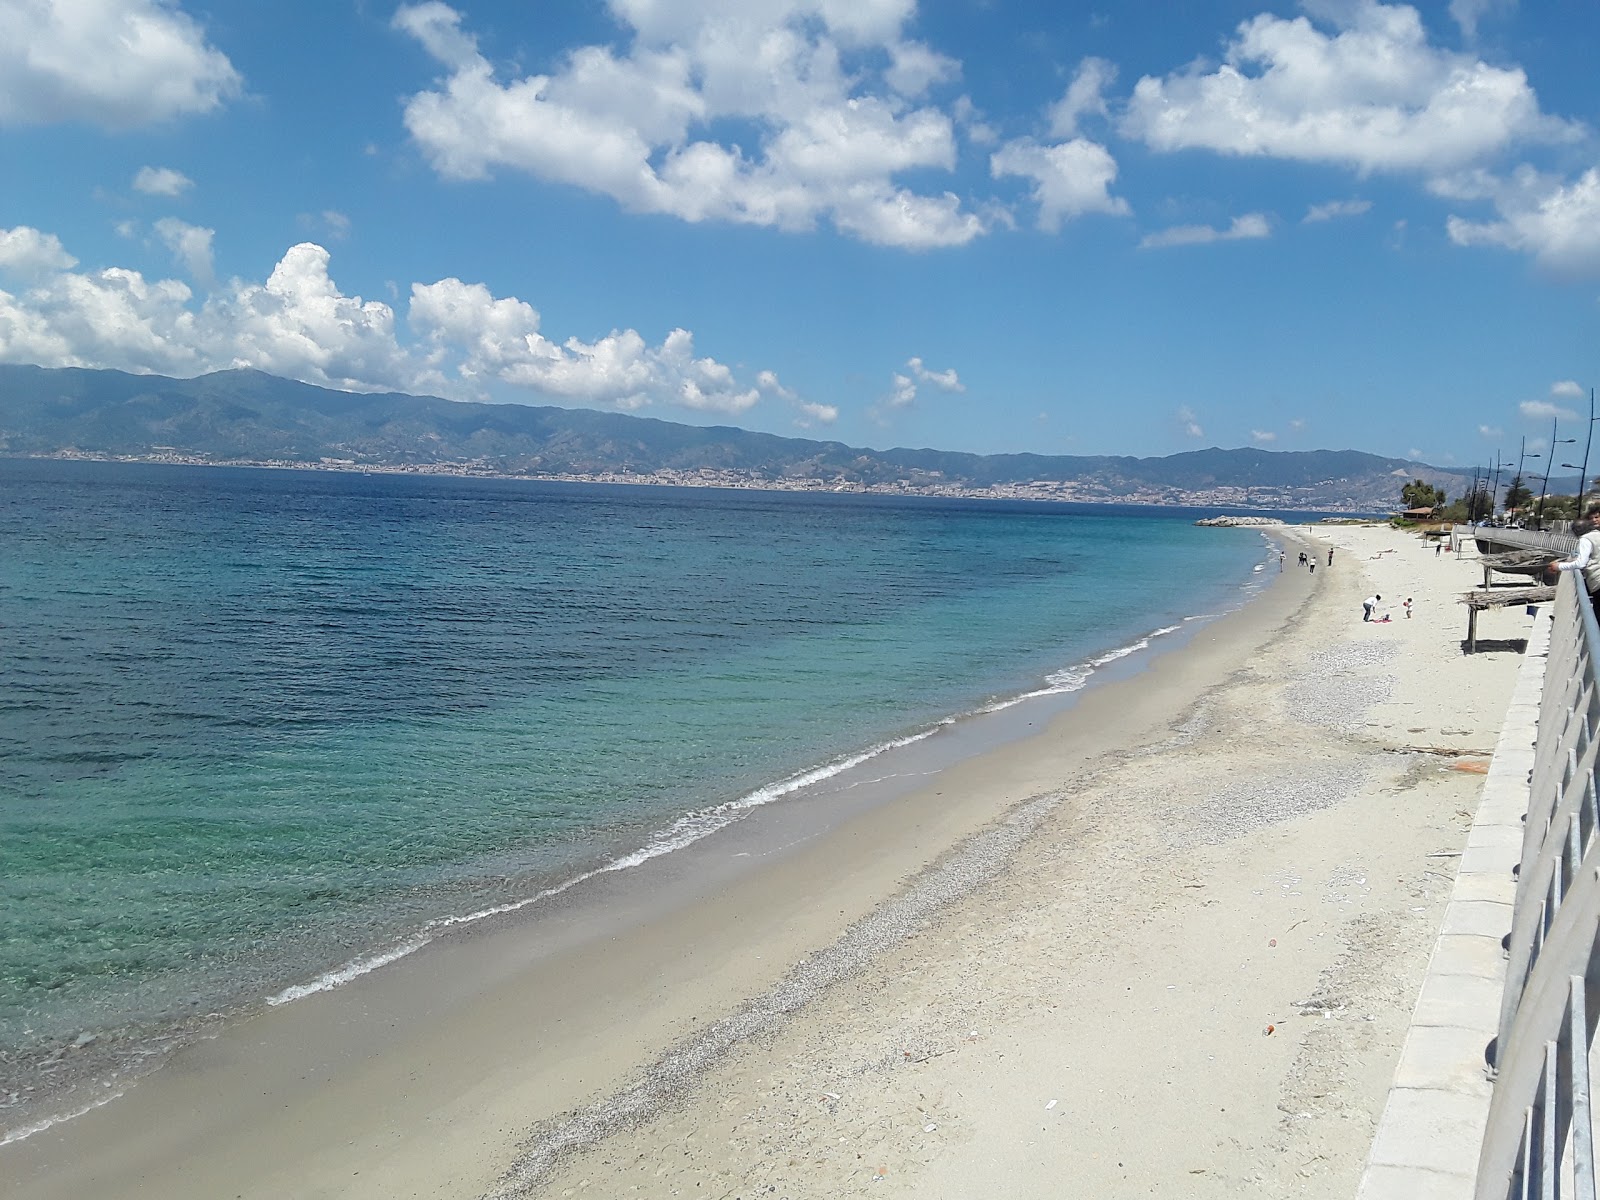 Gallico Marina'in fotoğrafı kahverengi kum yüzey ile